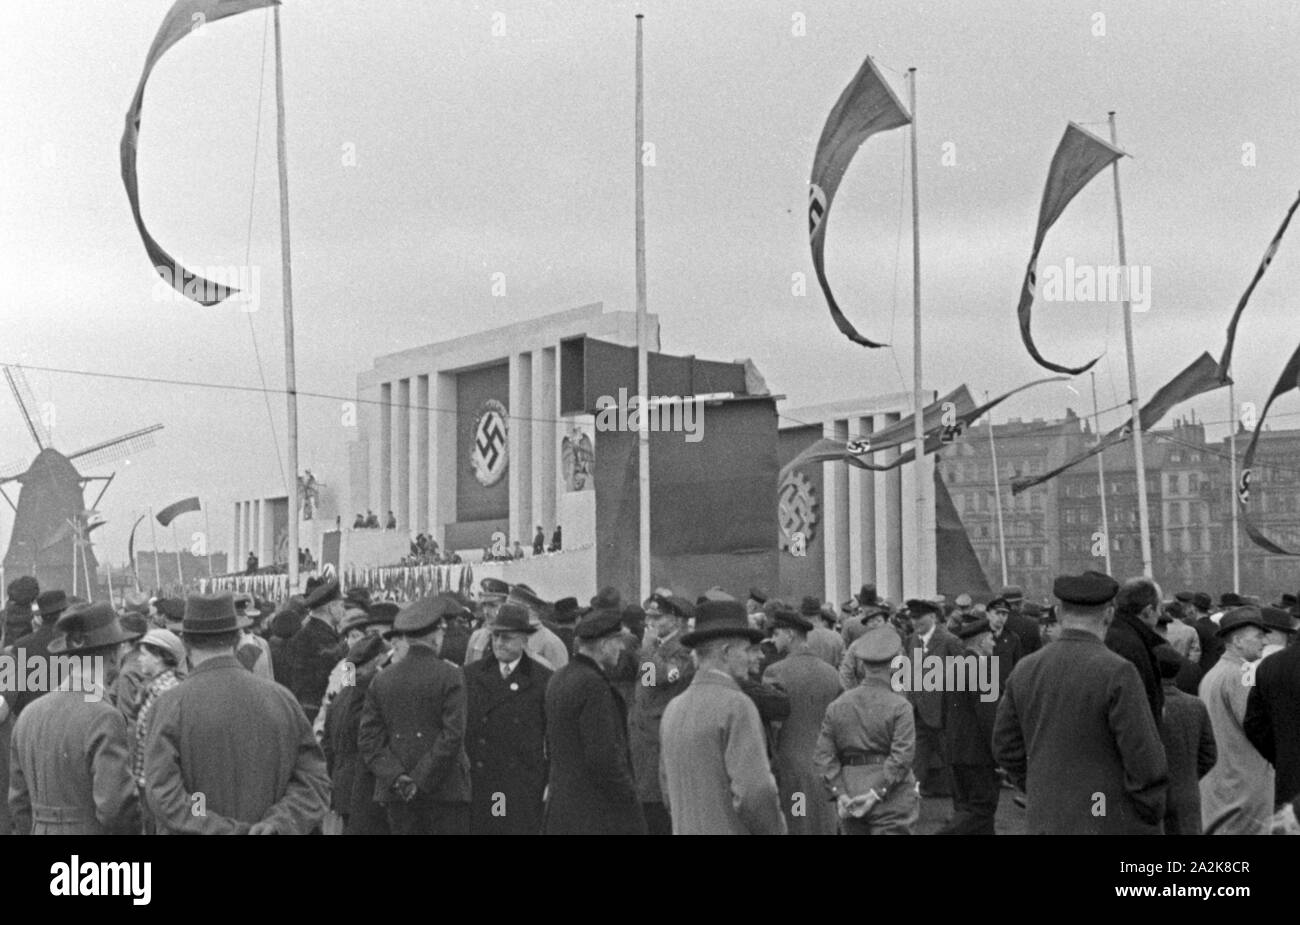 Parteiveranstaltung der NSDAP und HJ 1936 Reichssieger, Deutschland 1930er Jahre. Nsdap-Veranstaltung für die Hitlerjugend Reichssieger Wettbewerb 1936, in Deutschland 1930. Stockfoto